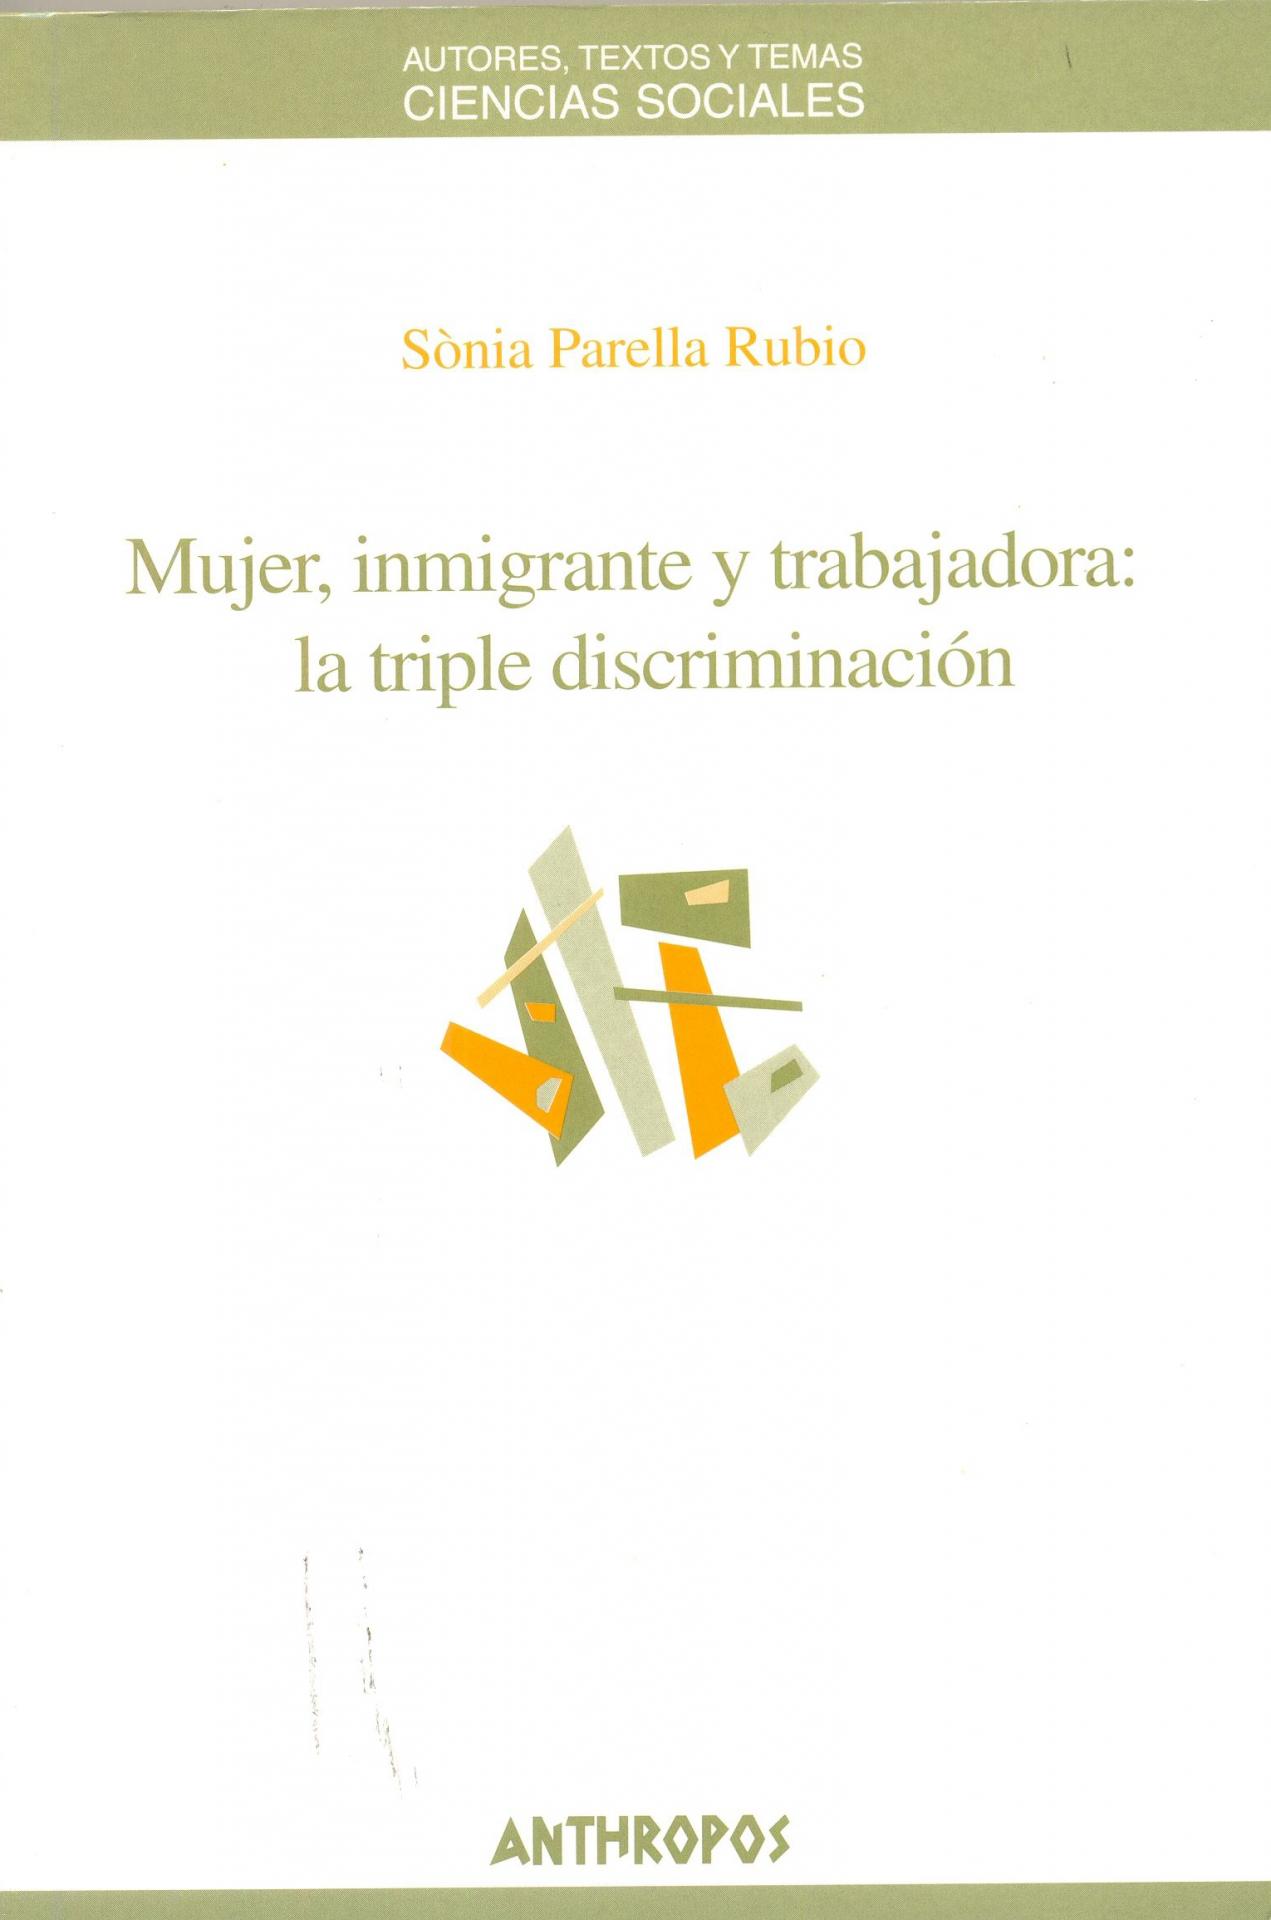 MUJER, INMIGRANTE Y TRABAJADORA: LA TRIPLE DISCRIMINACIÓN. Parella, S.